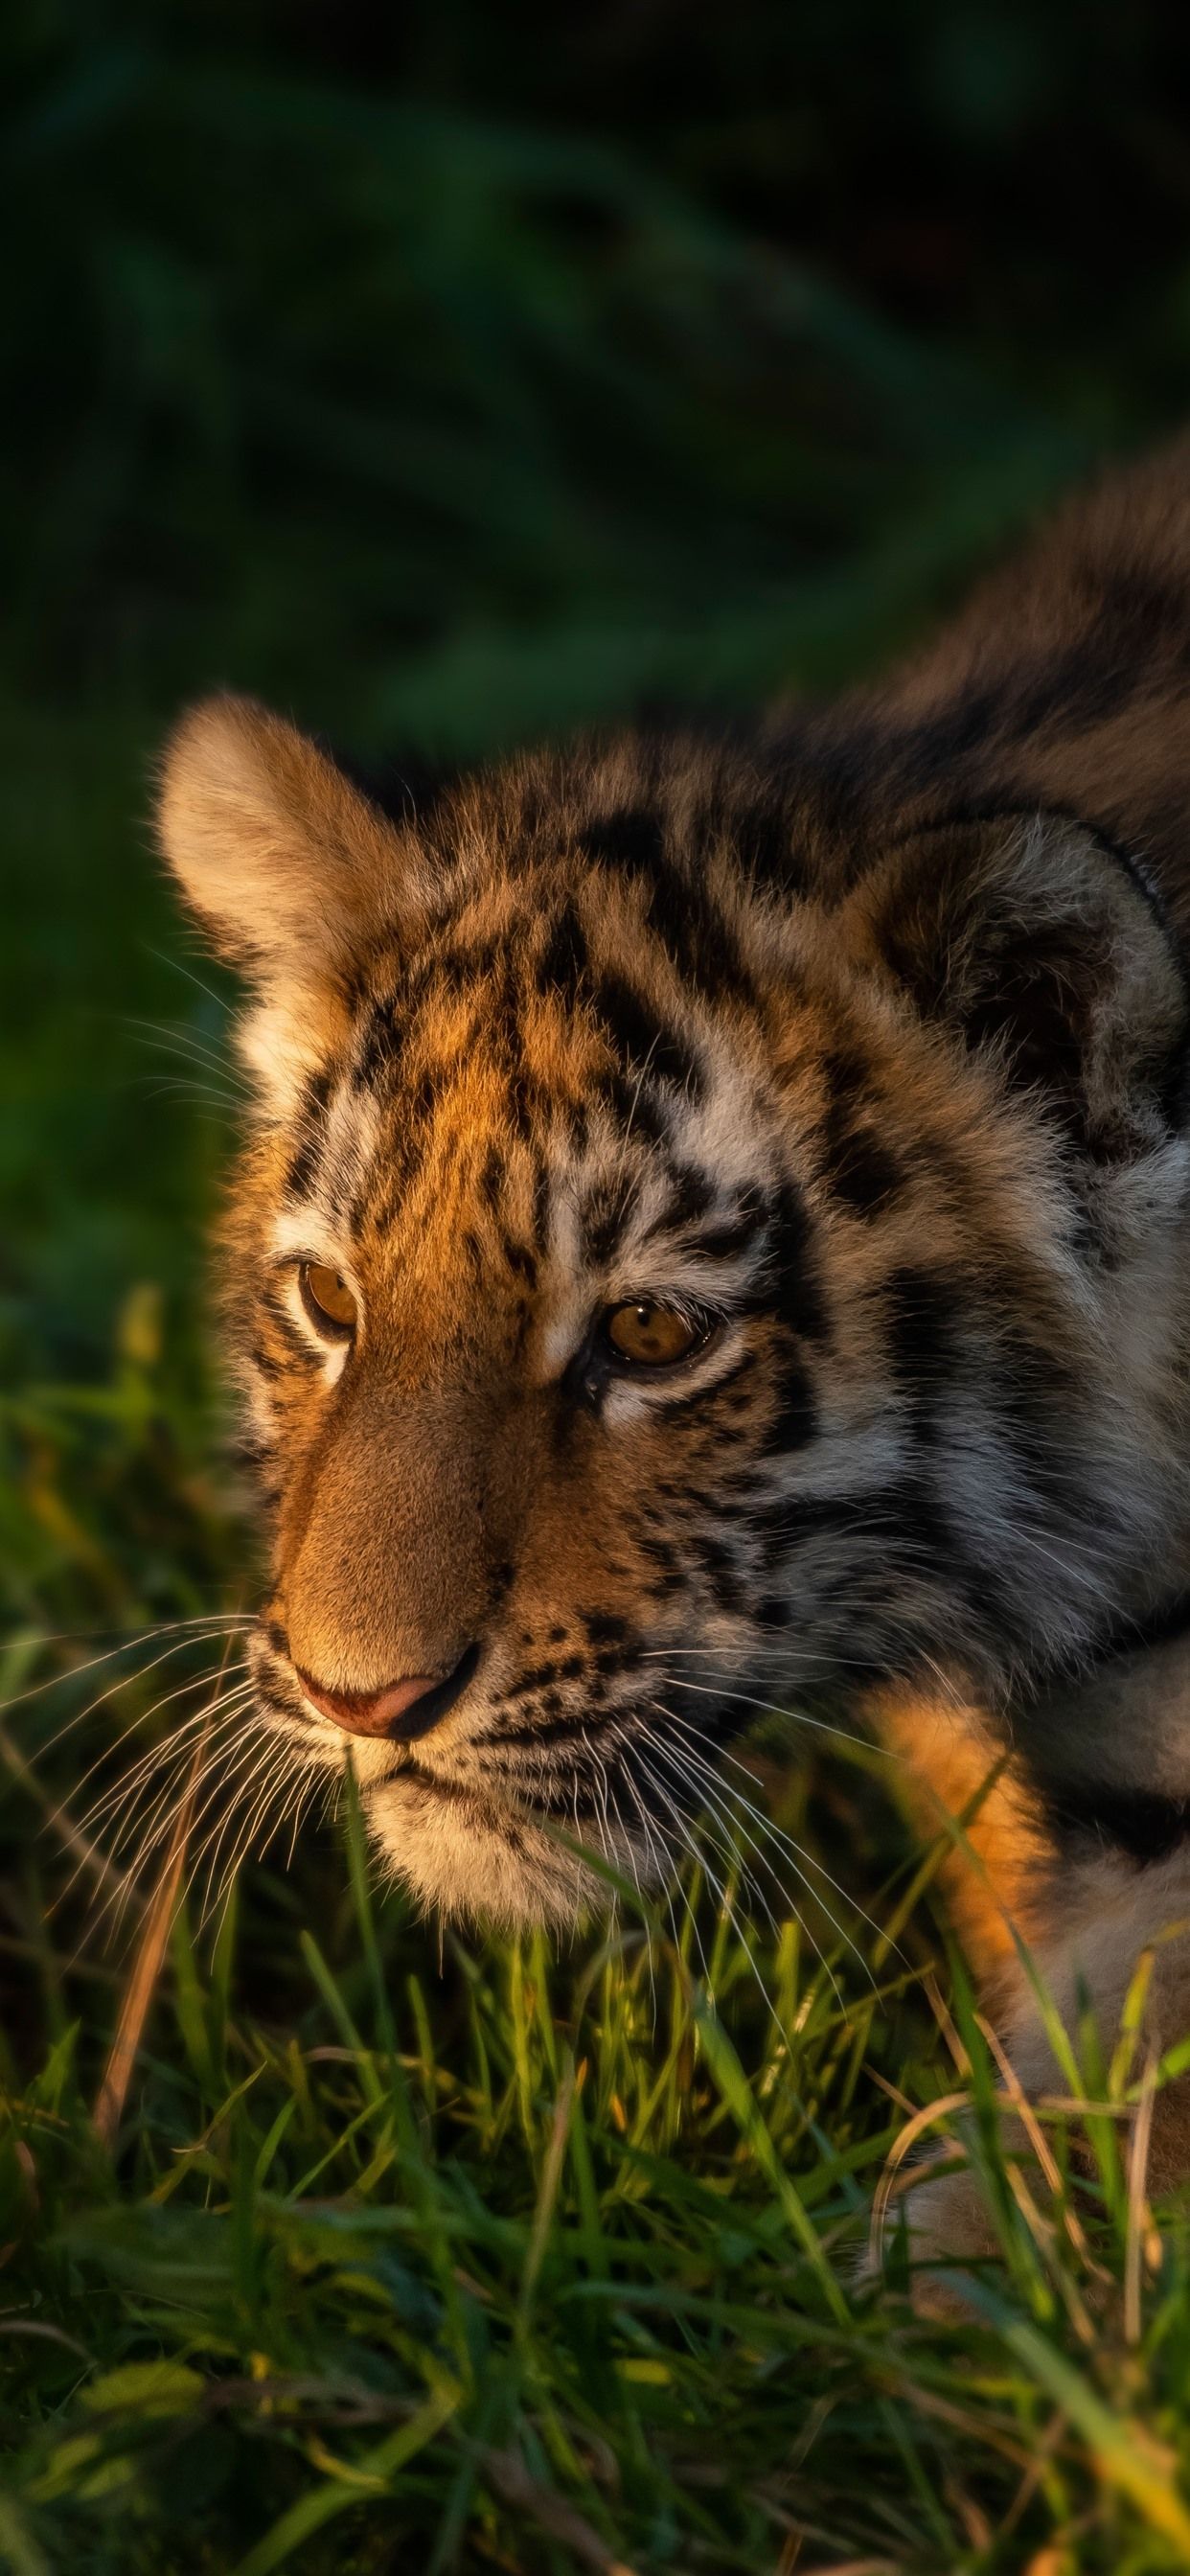 Tiger Cub Walking In The Grass 1242x2688 IPhone 11 Pro XS Max